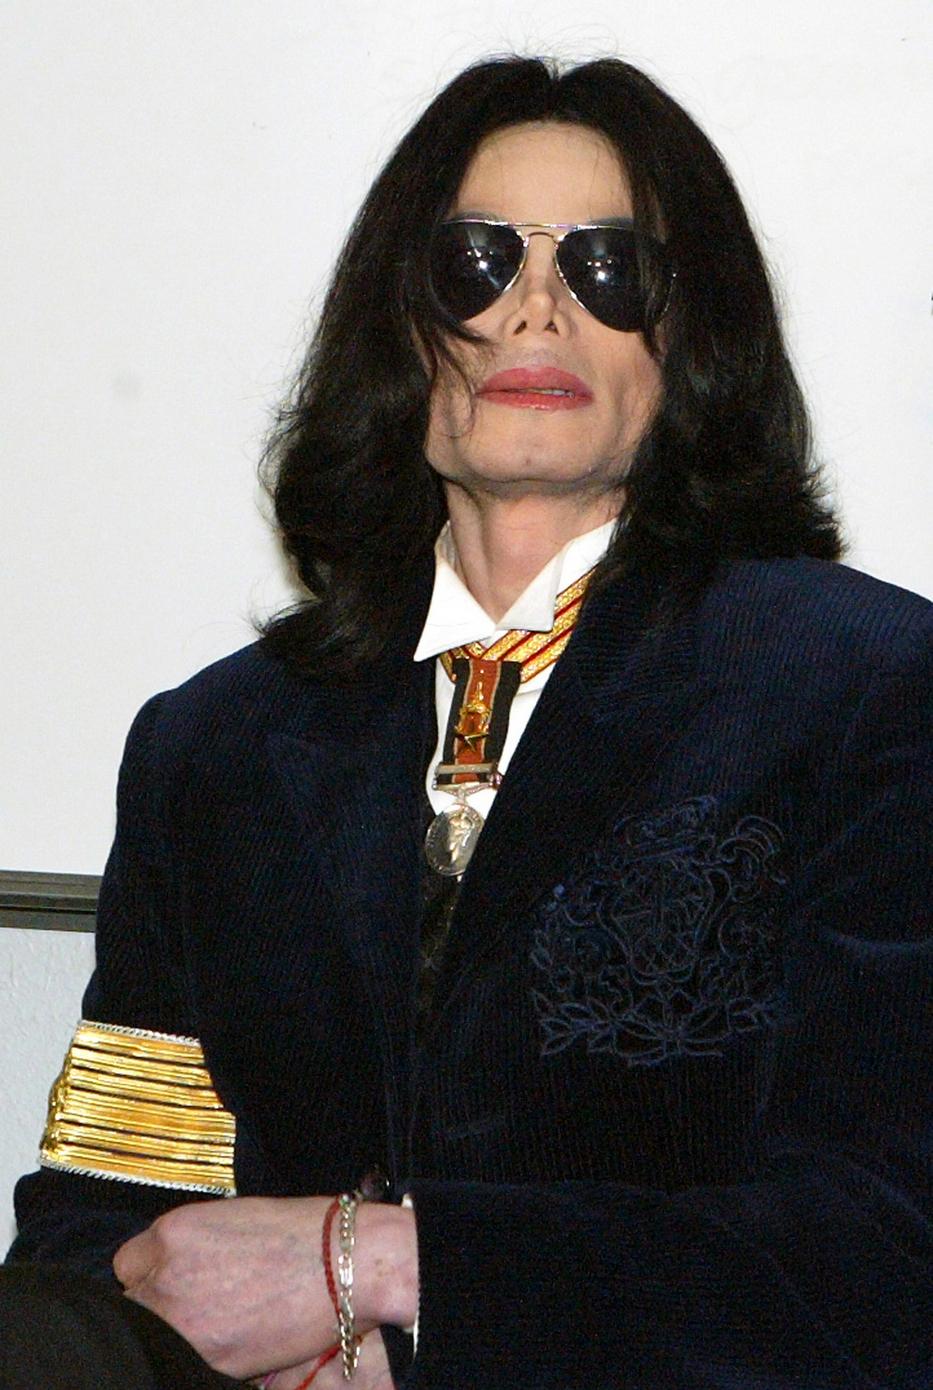 Michael Jacksont már 
életében is támadták a 
molesztálások miatt /Fotó: Northfoto